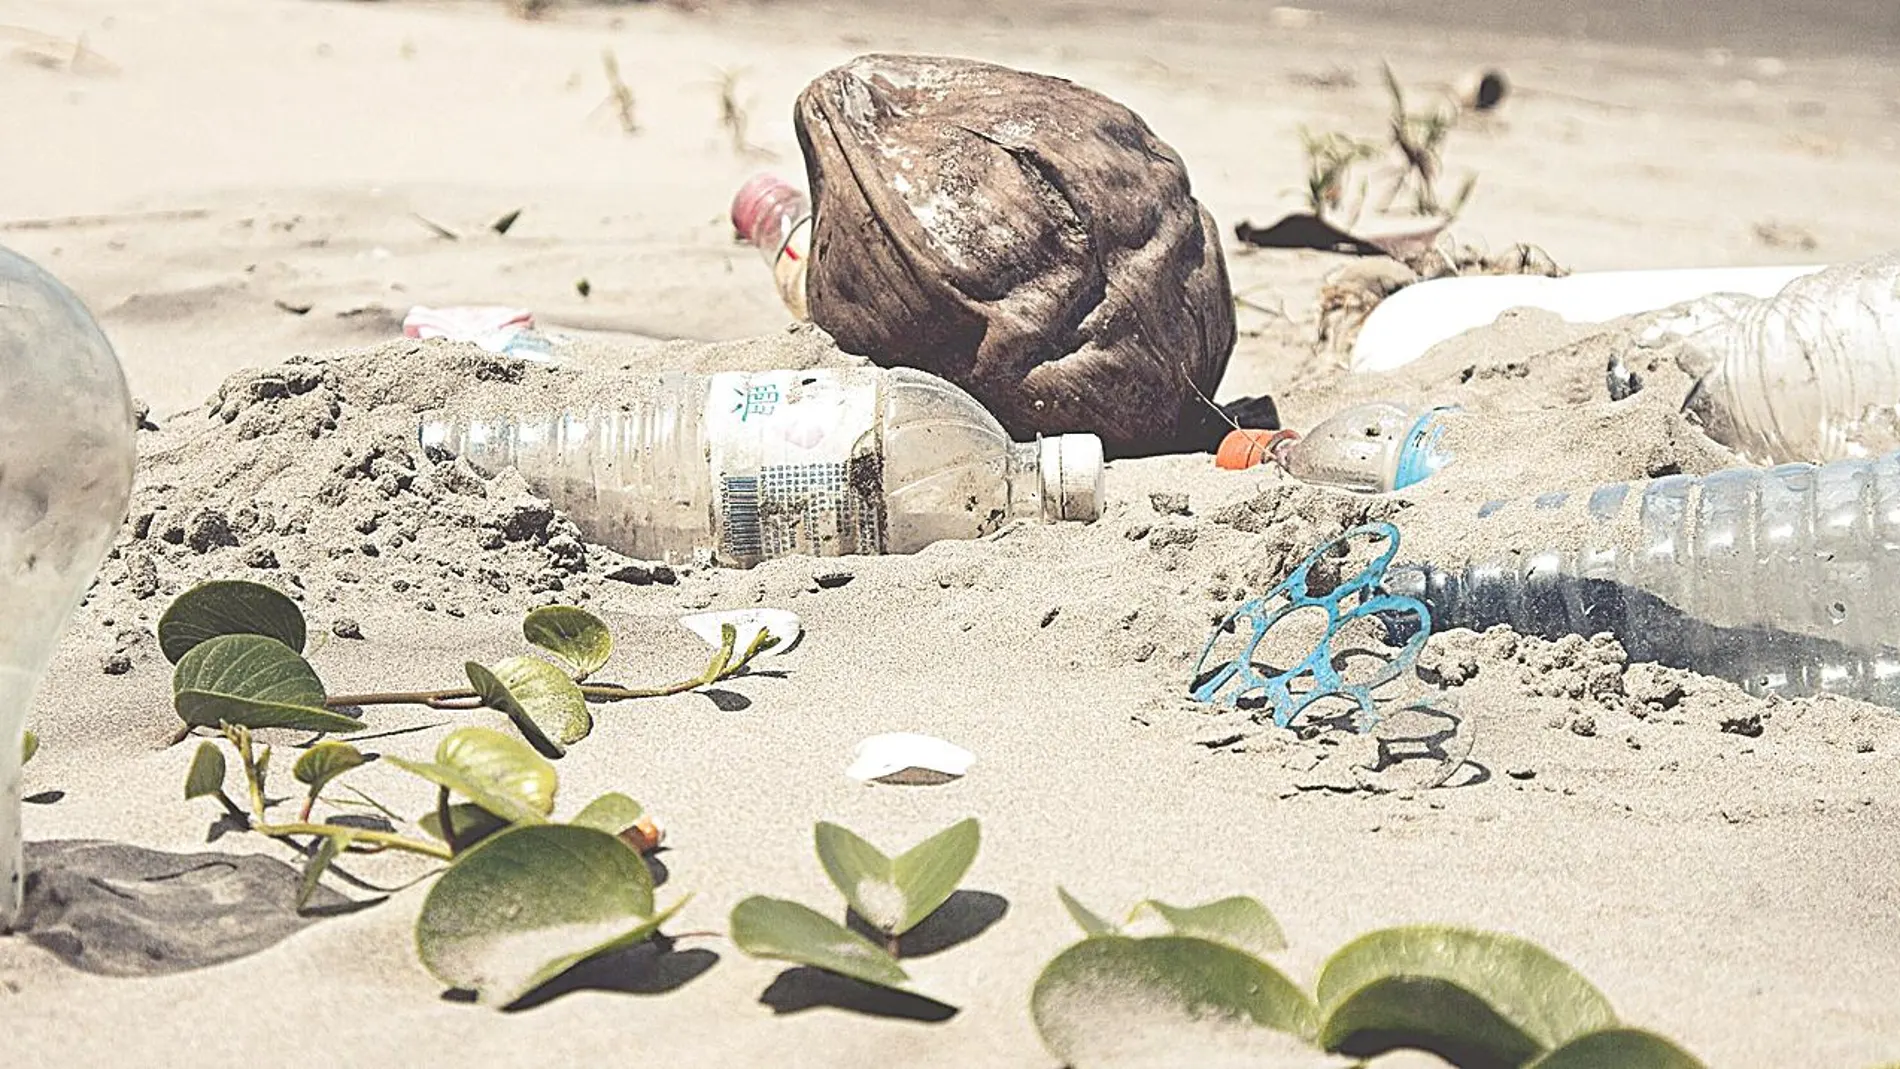 En España solo se recicla el 30% del plástico que se consume anualmente, según el último informe de Greenpeace